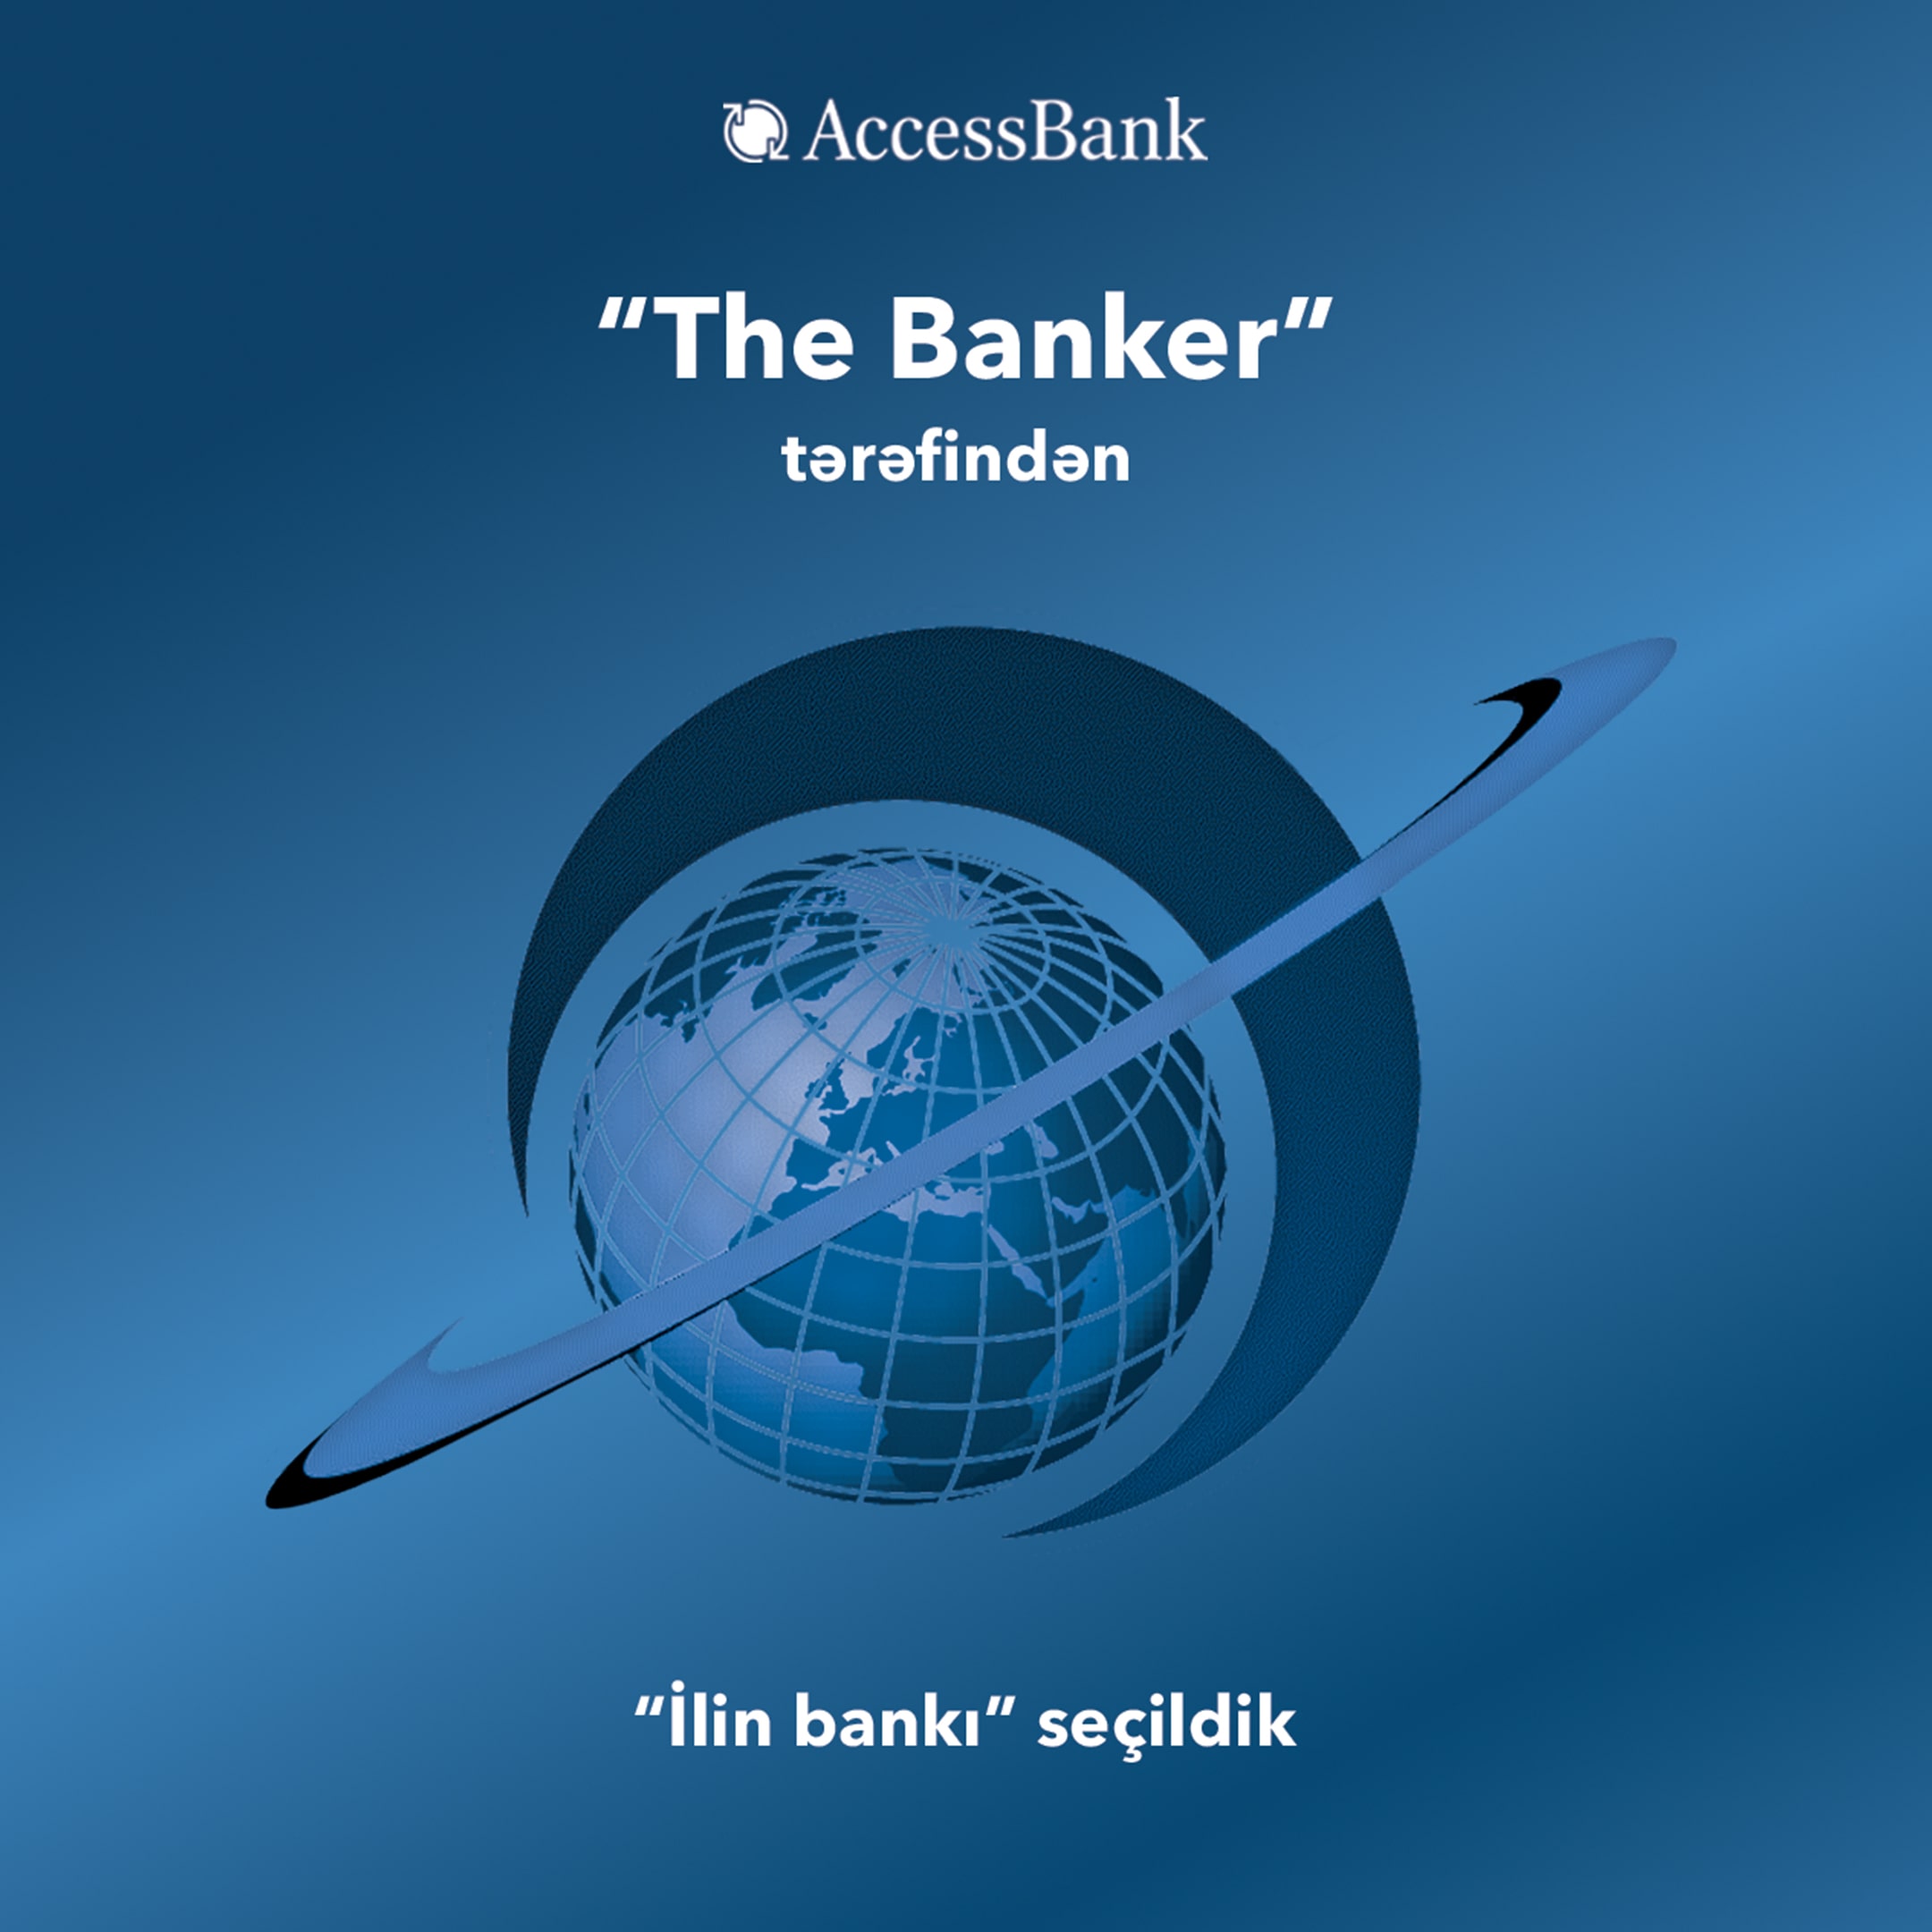 “AccessBank” “The Banker” tərəfindən “İlin bankı” seçildi